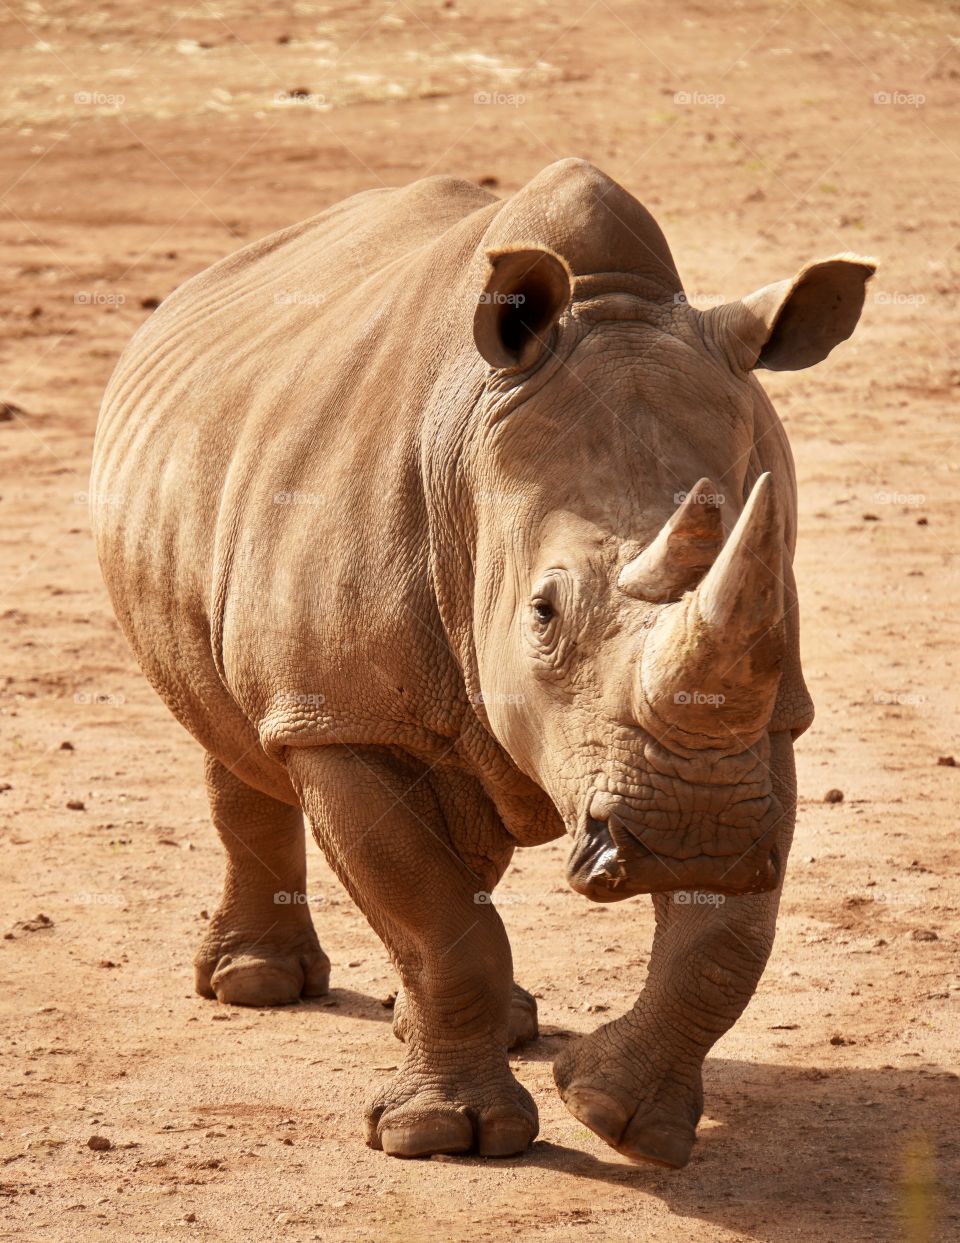 Rhino jogging